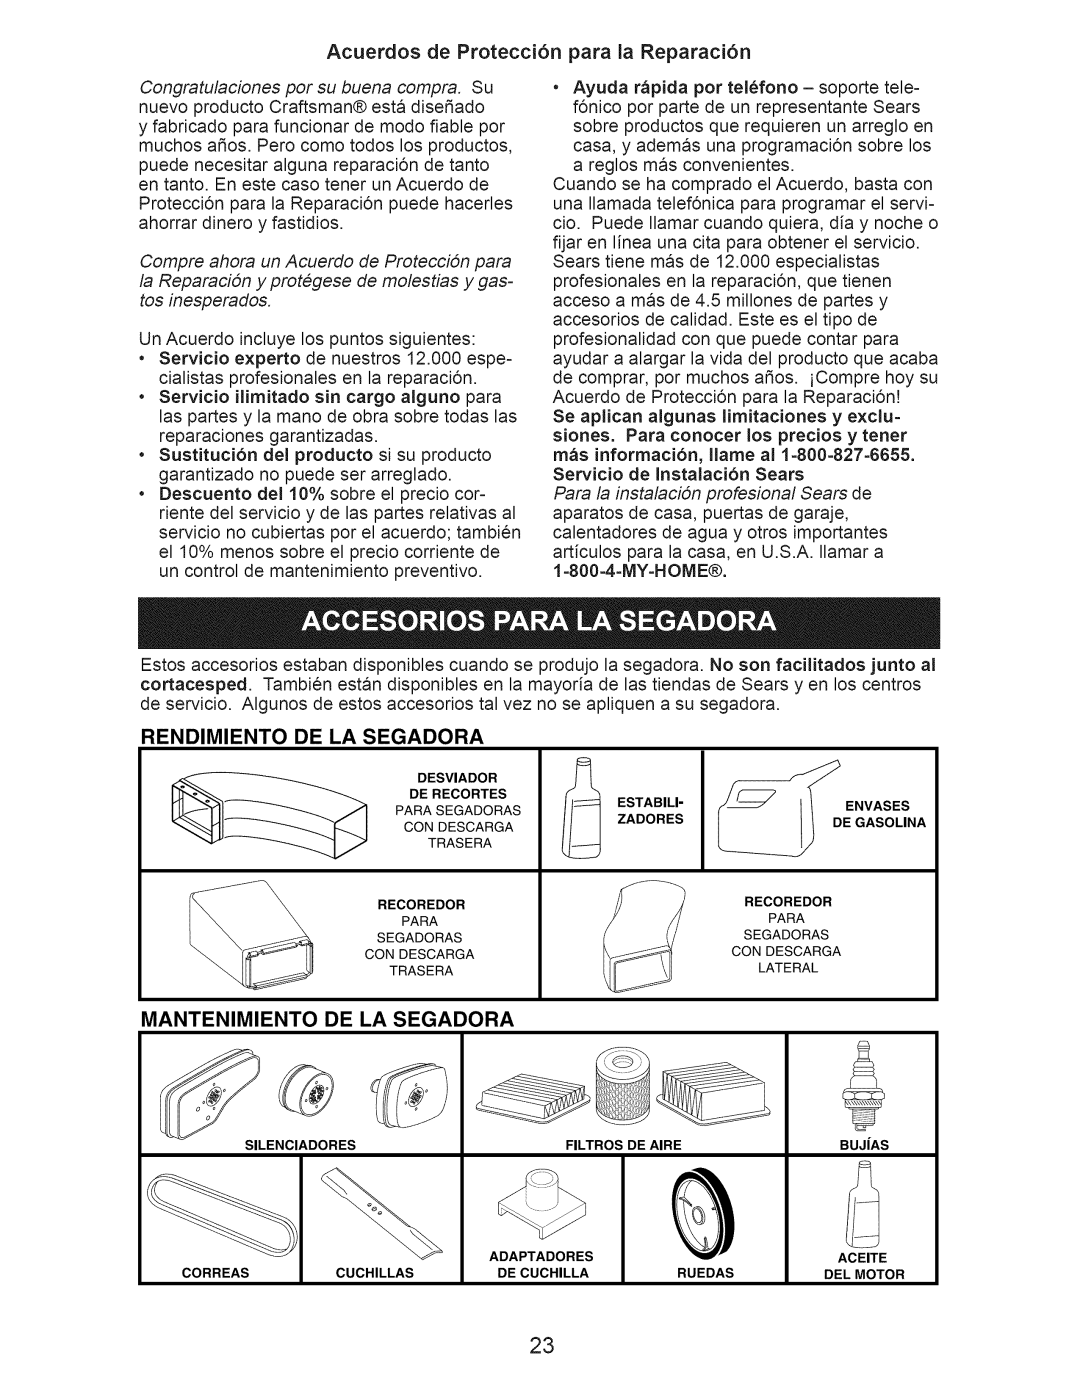 Craftsman 917.376234 Acuerdos de Protecci6n para la Reparaci6n, Rendimiento De La Segadora, Mantenimiento De La Segadora 